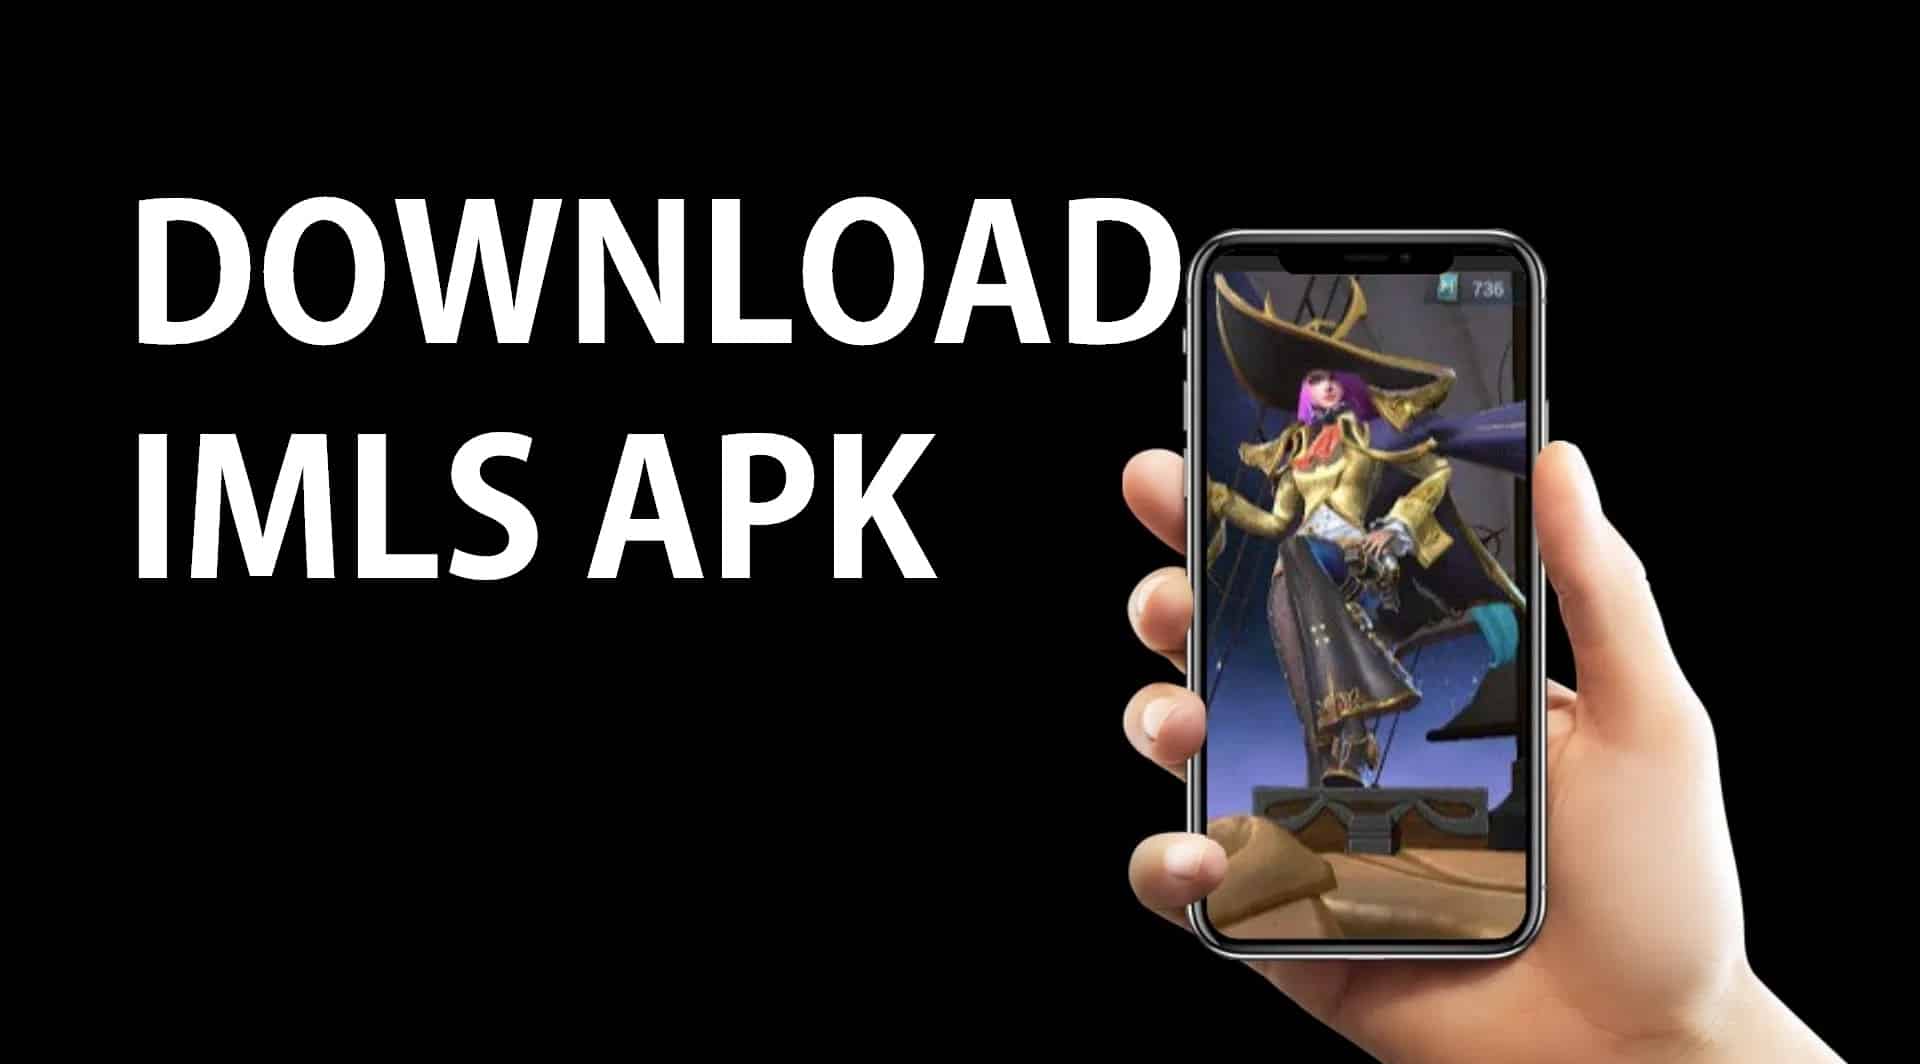 Download-IMLS-APK-dan-Dapatkan-Skin-Mobile-Legends-GratiS